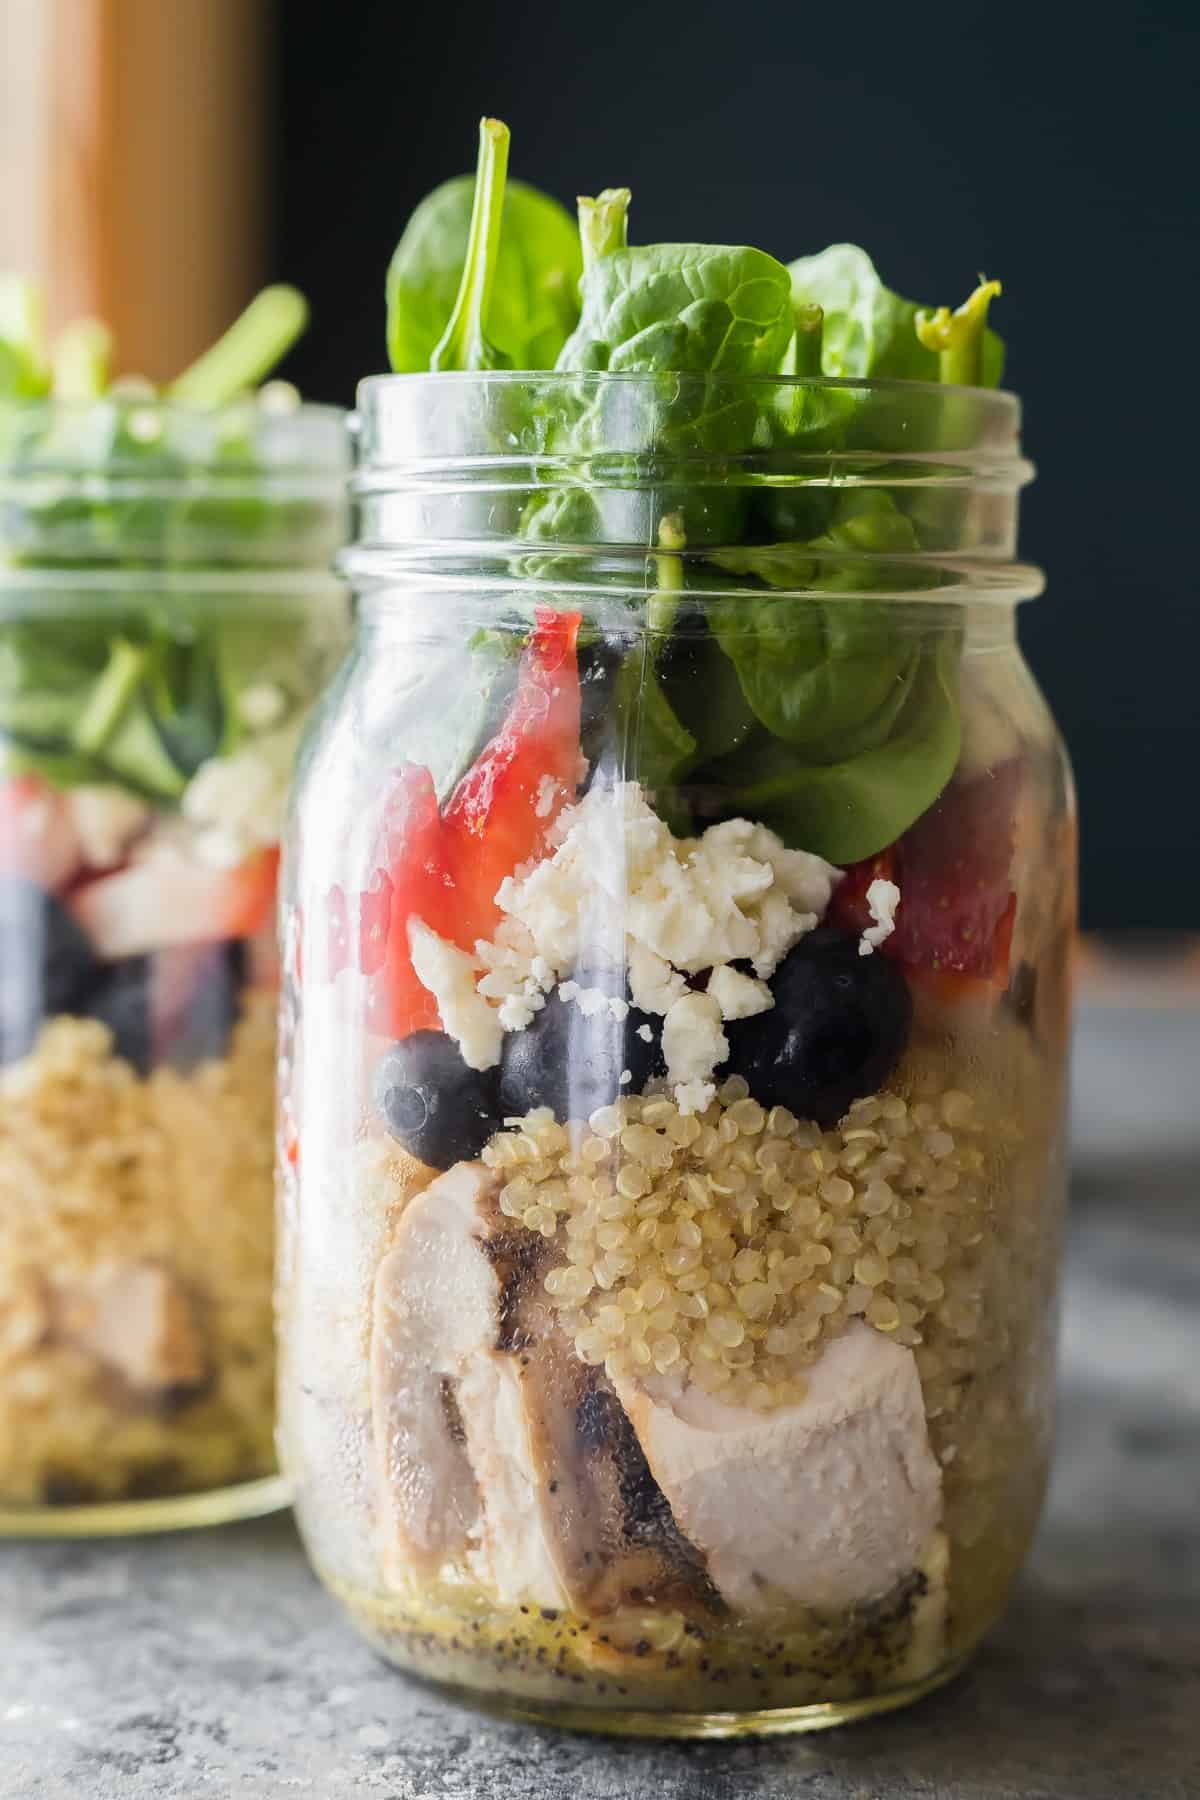 https://sweetpeasandsaffron.com/wp-content/uploads/2017/06/Strawberry-Spinach-Quinoa-Jar-Salads-3.jpg